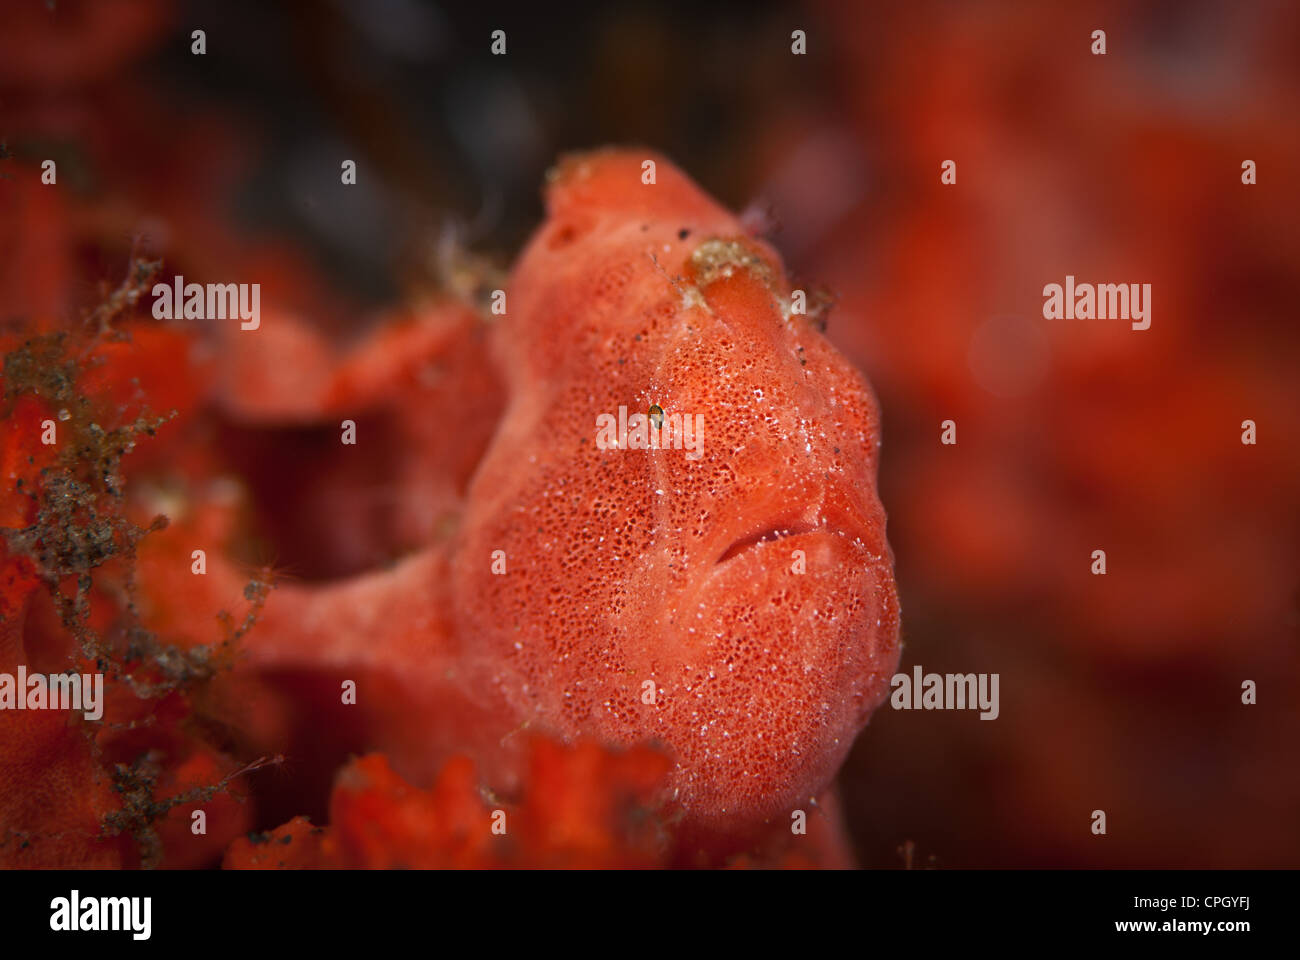 Eine rote Anglerfisch fügt sich sehr gut in den roten Schwämmen, die es umgibt. Genommen in Tulamben, Bali, Indonesien Stockfoto